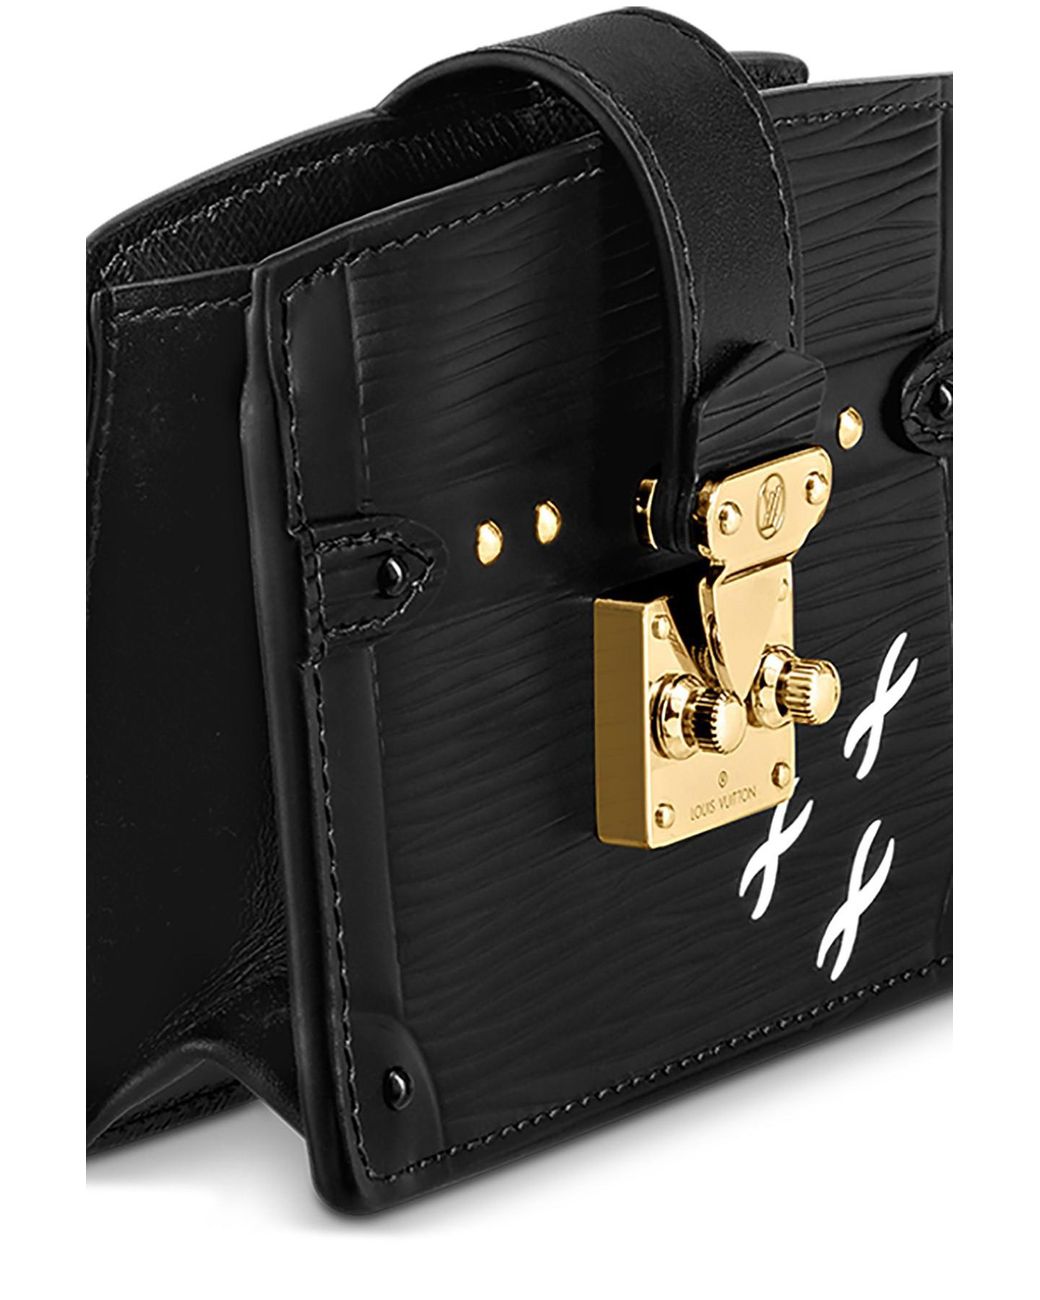 Louis Vuitton Trunk Multicartes EPI Leather Wallet